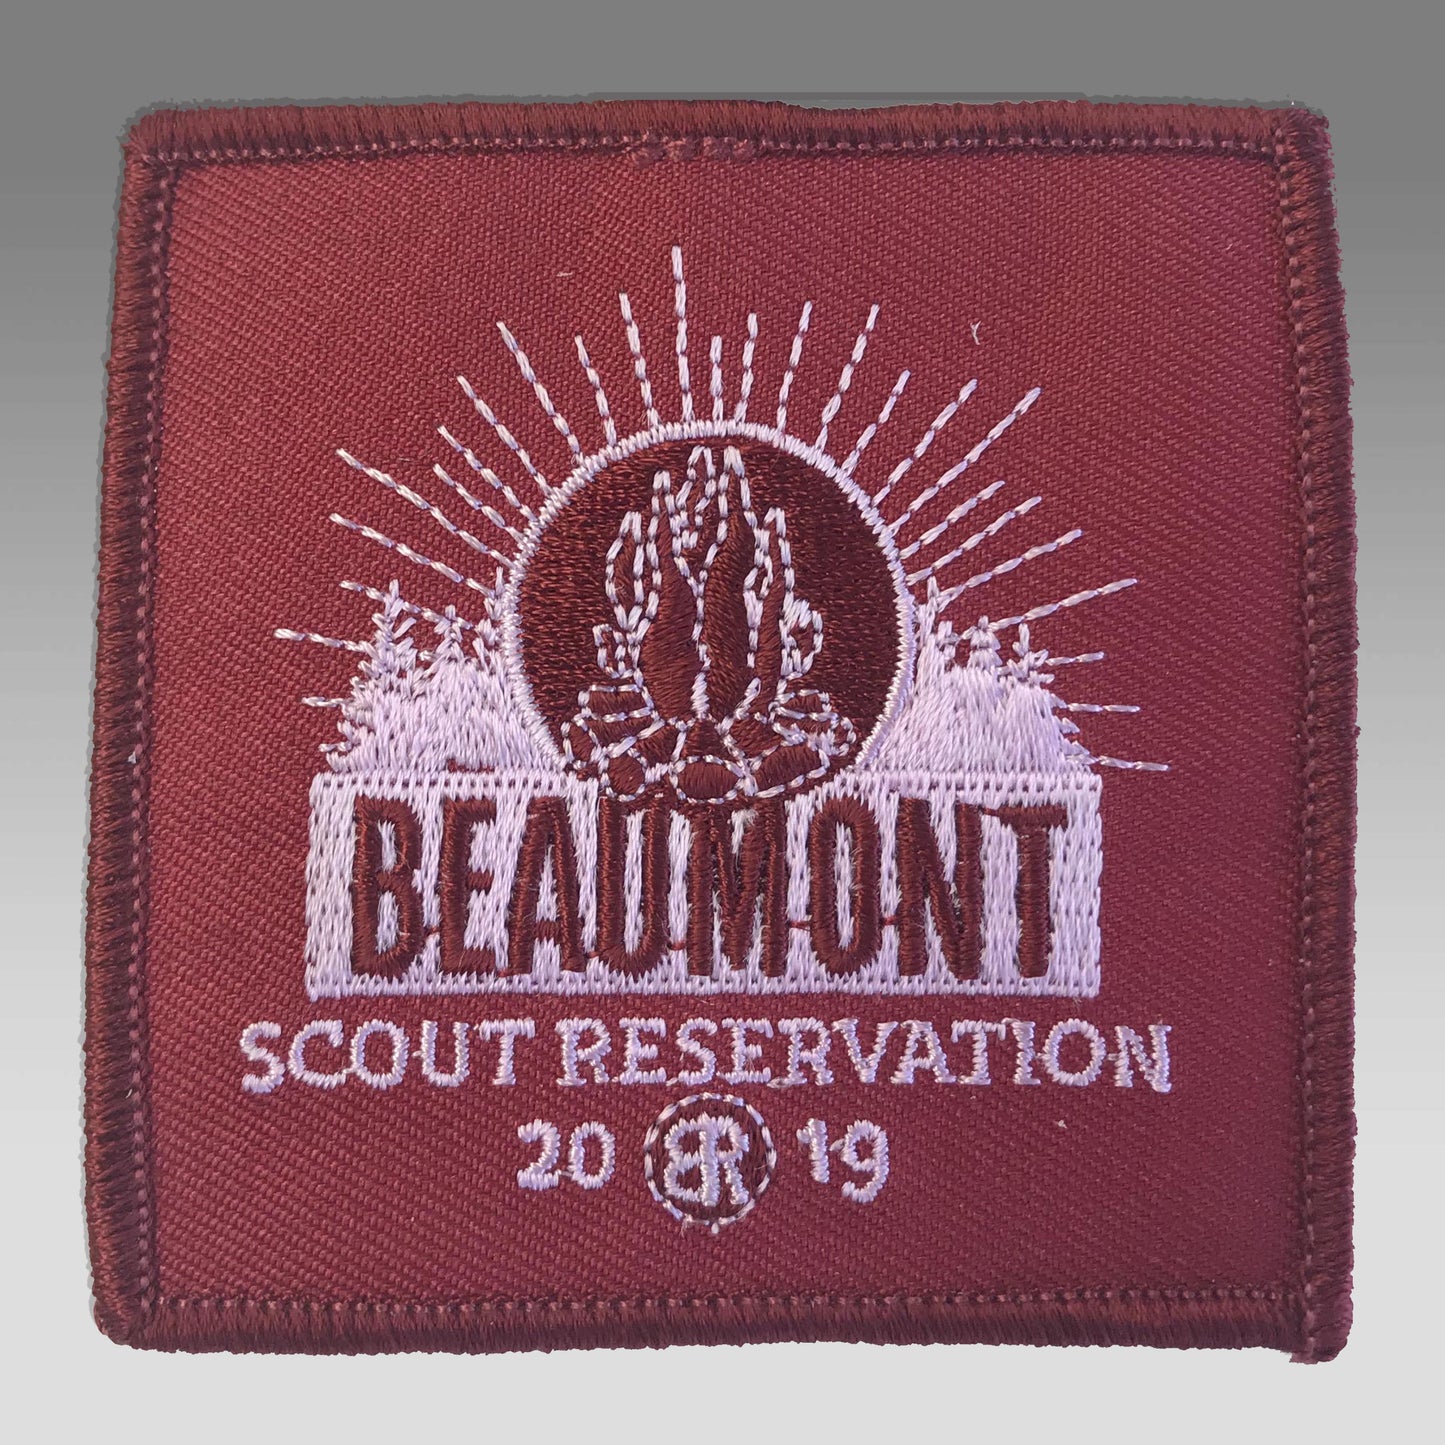 Emblem 2019 Beaumont Maroon no loop